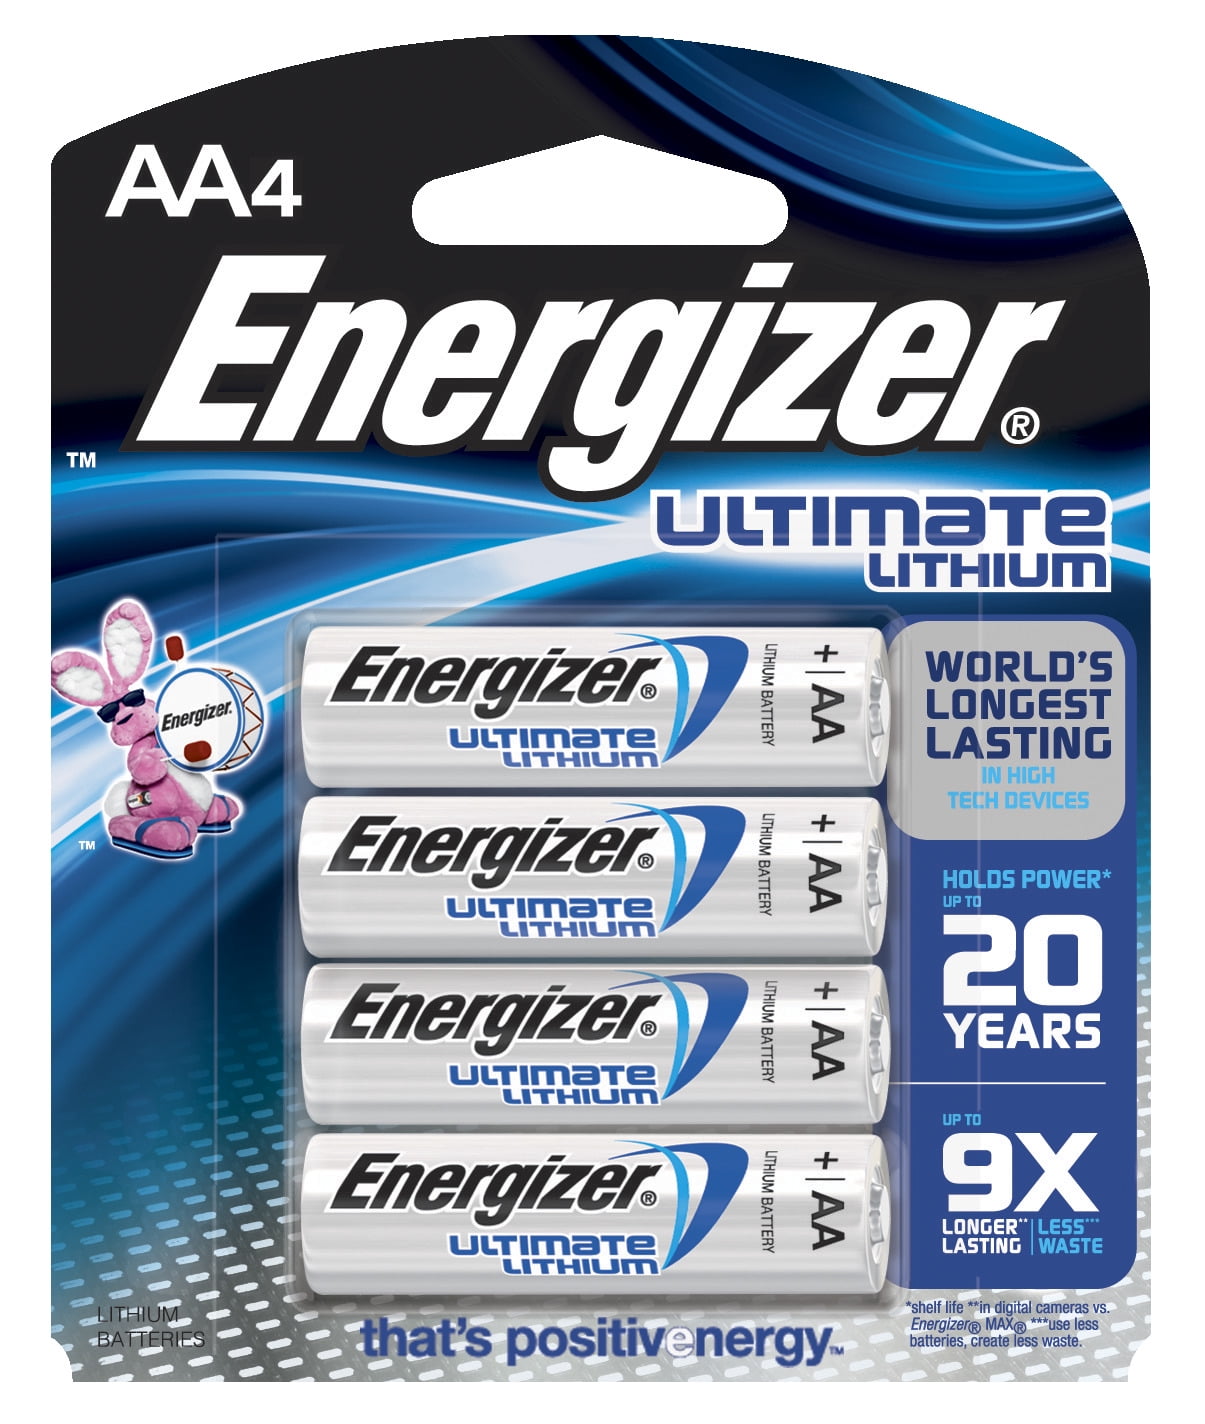 Geschatte Lezen licht Energizer e2 Lithium AA Battery, 2900 mAh, 1.5 V, Pack of 4 - Walmart.com